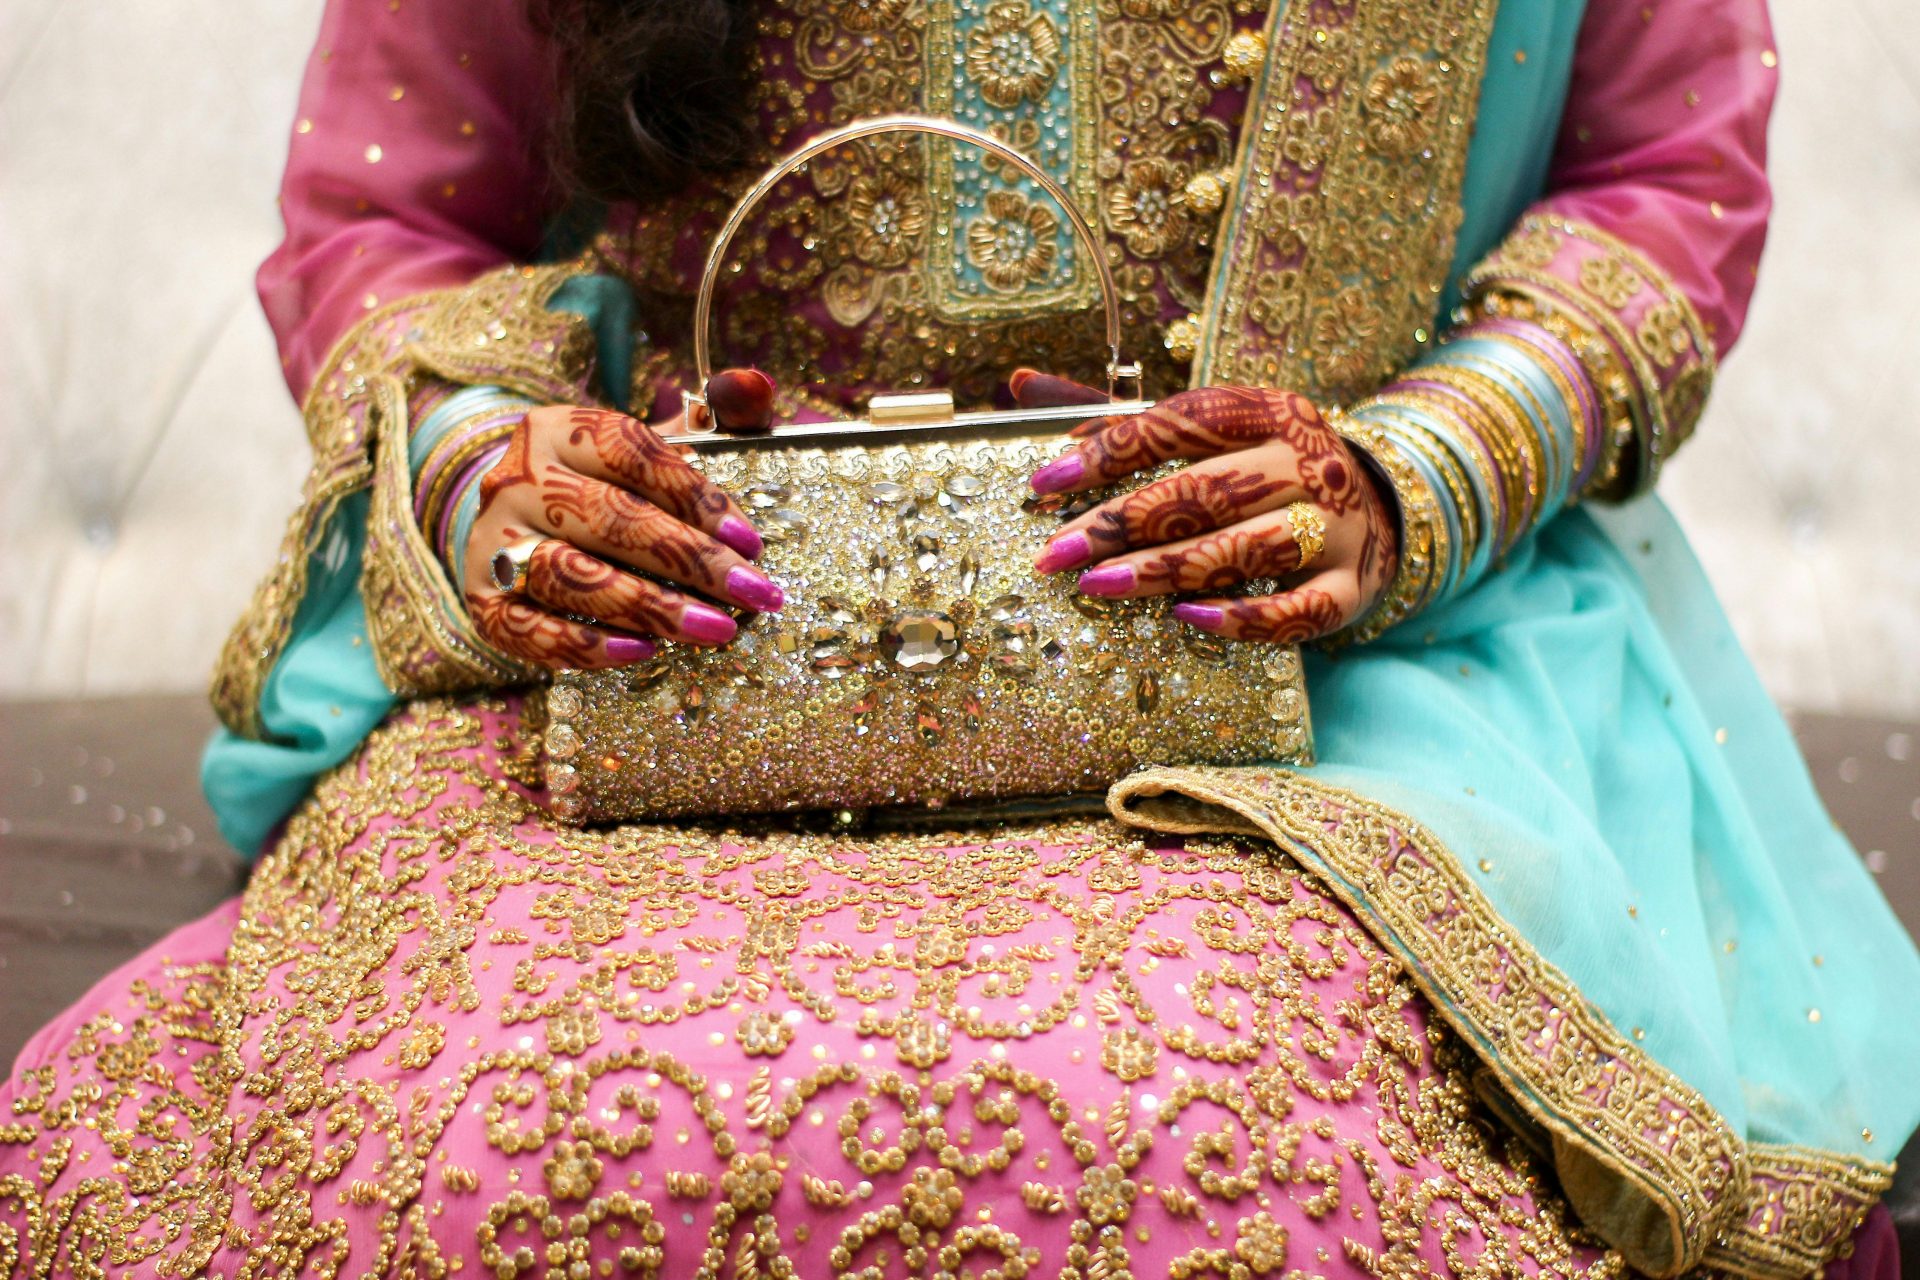 “Слишком маленькое приданное”: в Индии муж неделю избивал жену после свадьбы